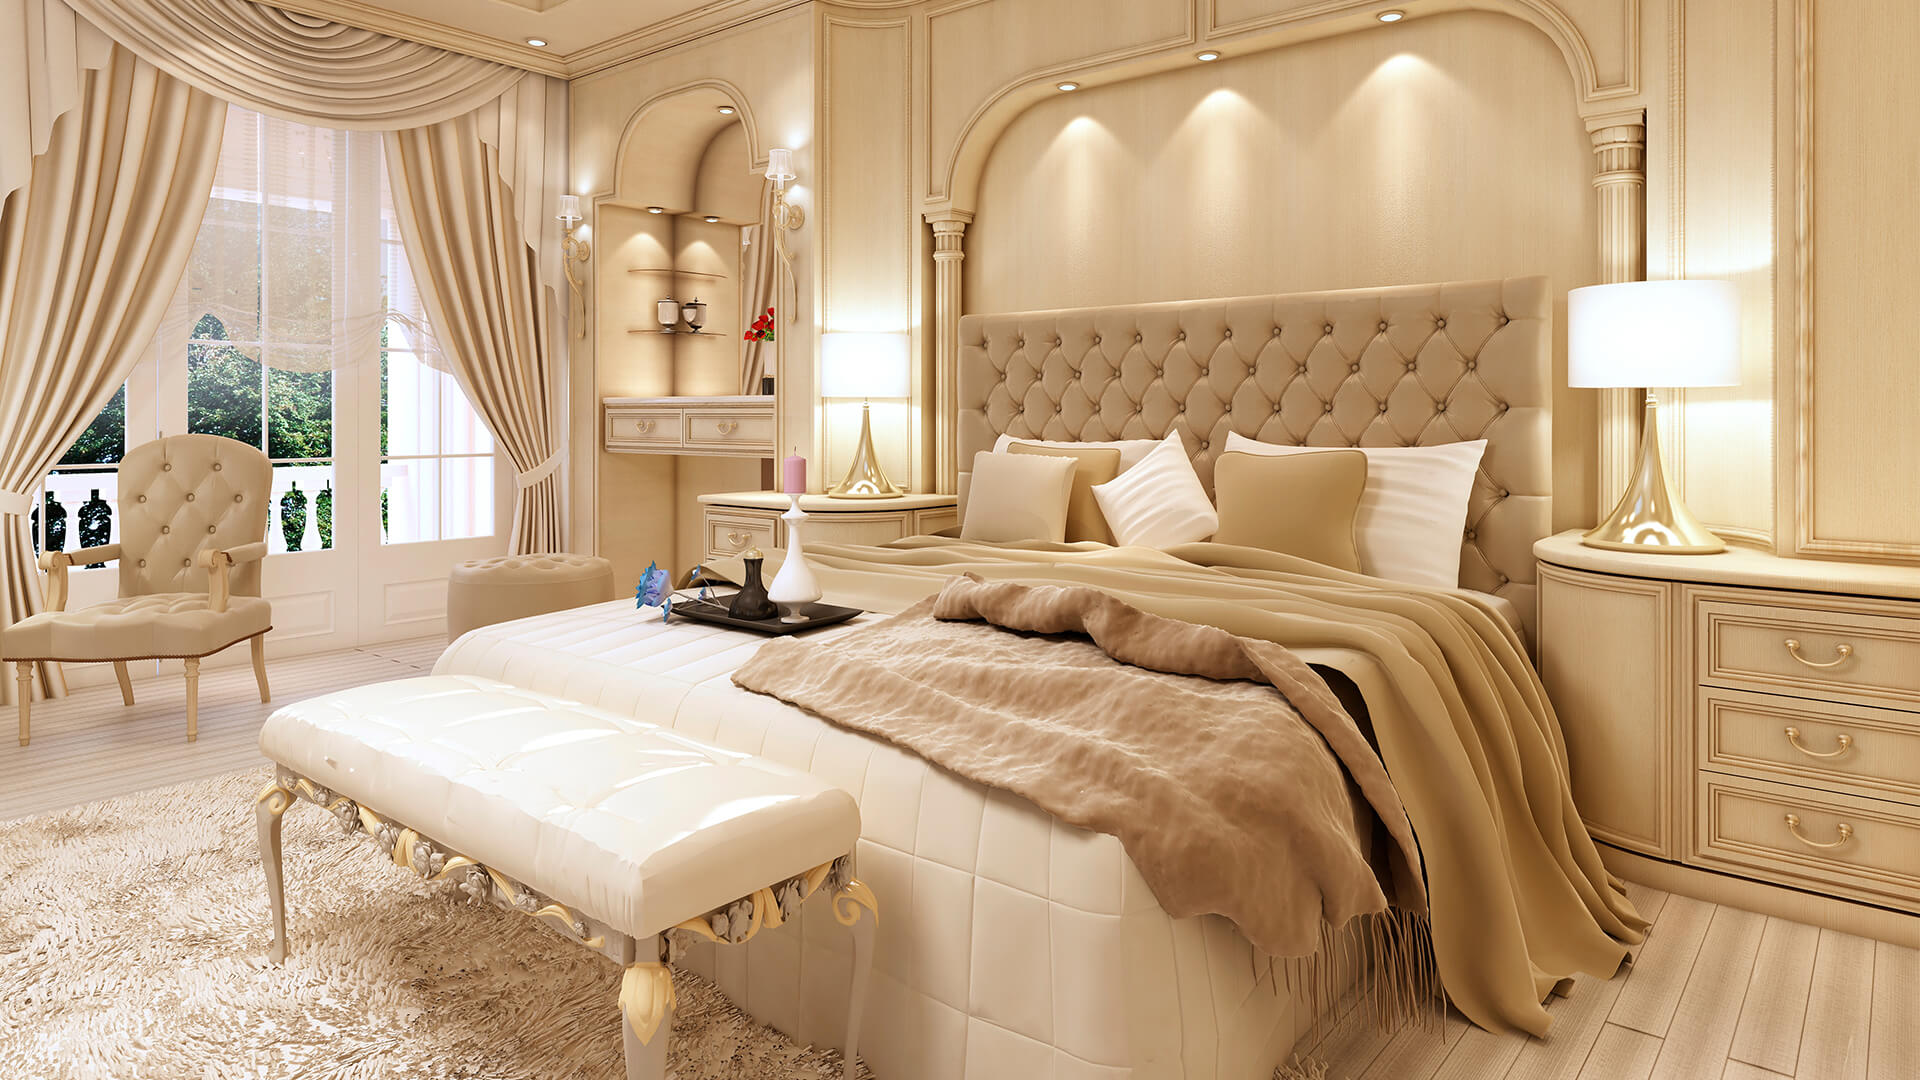 5 star hotel bedroom furniture set